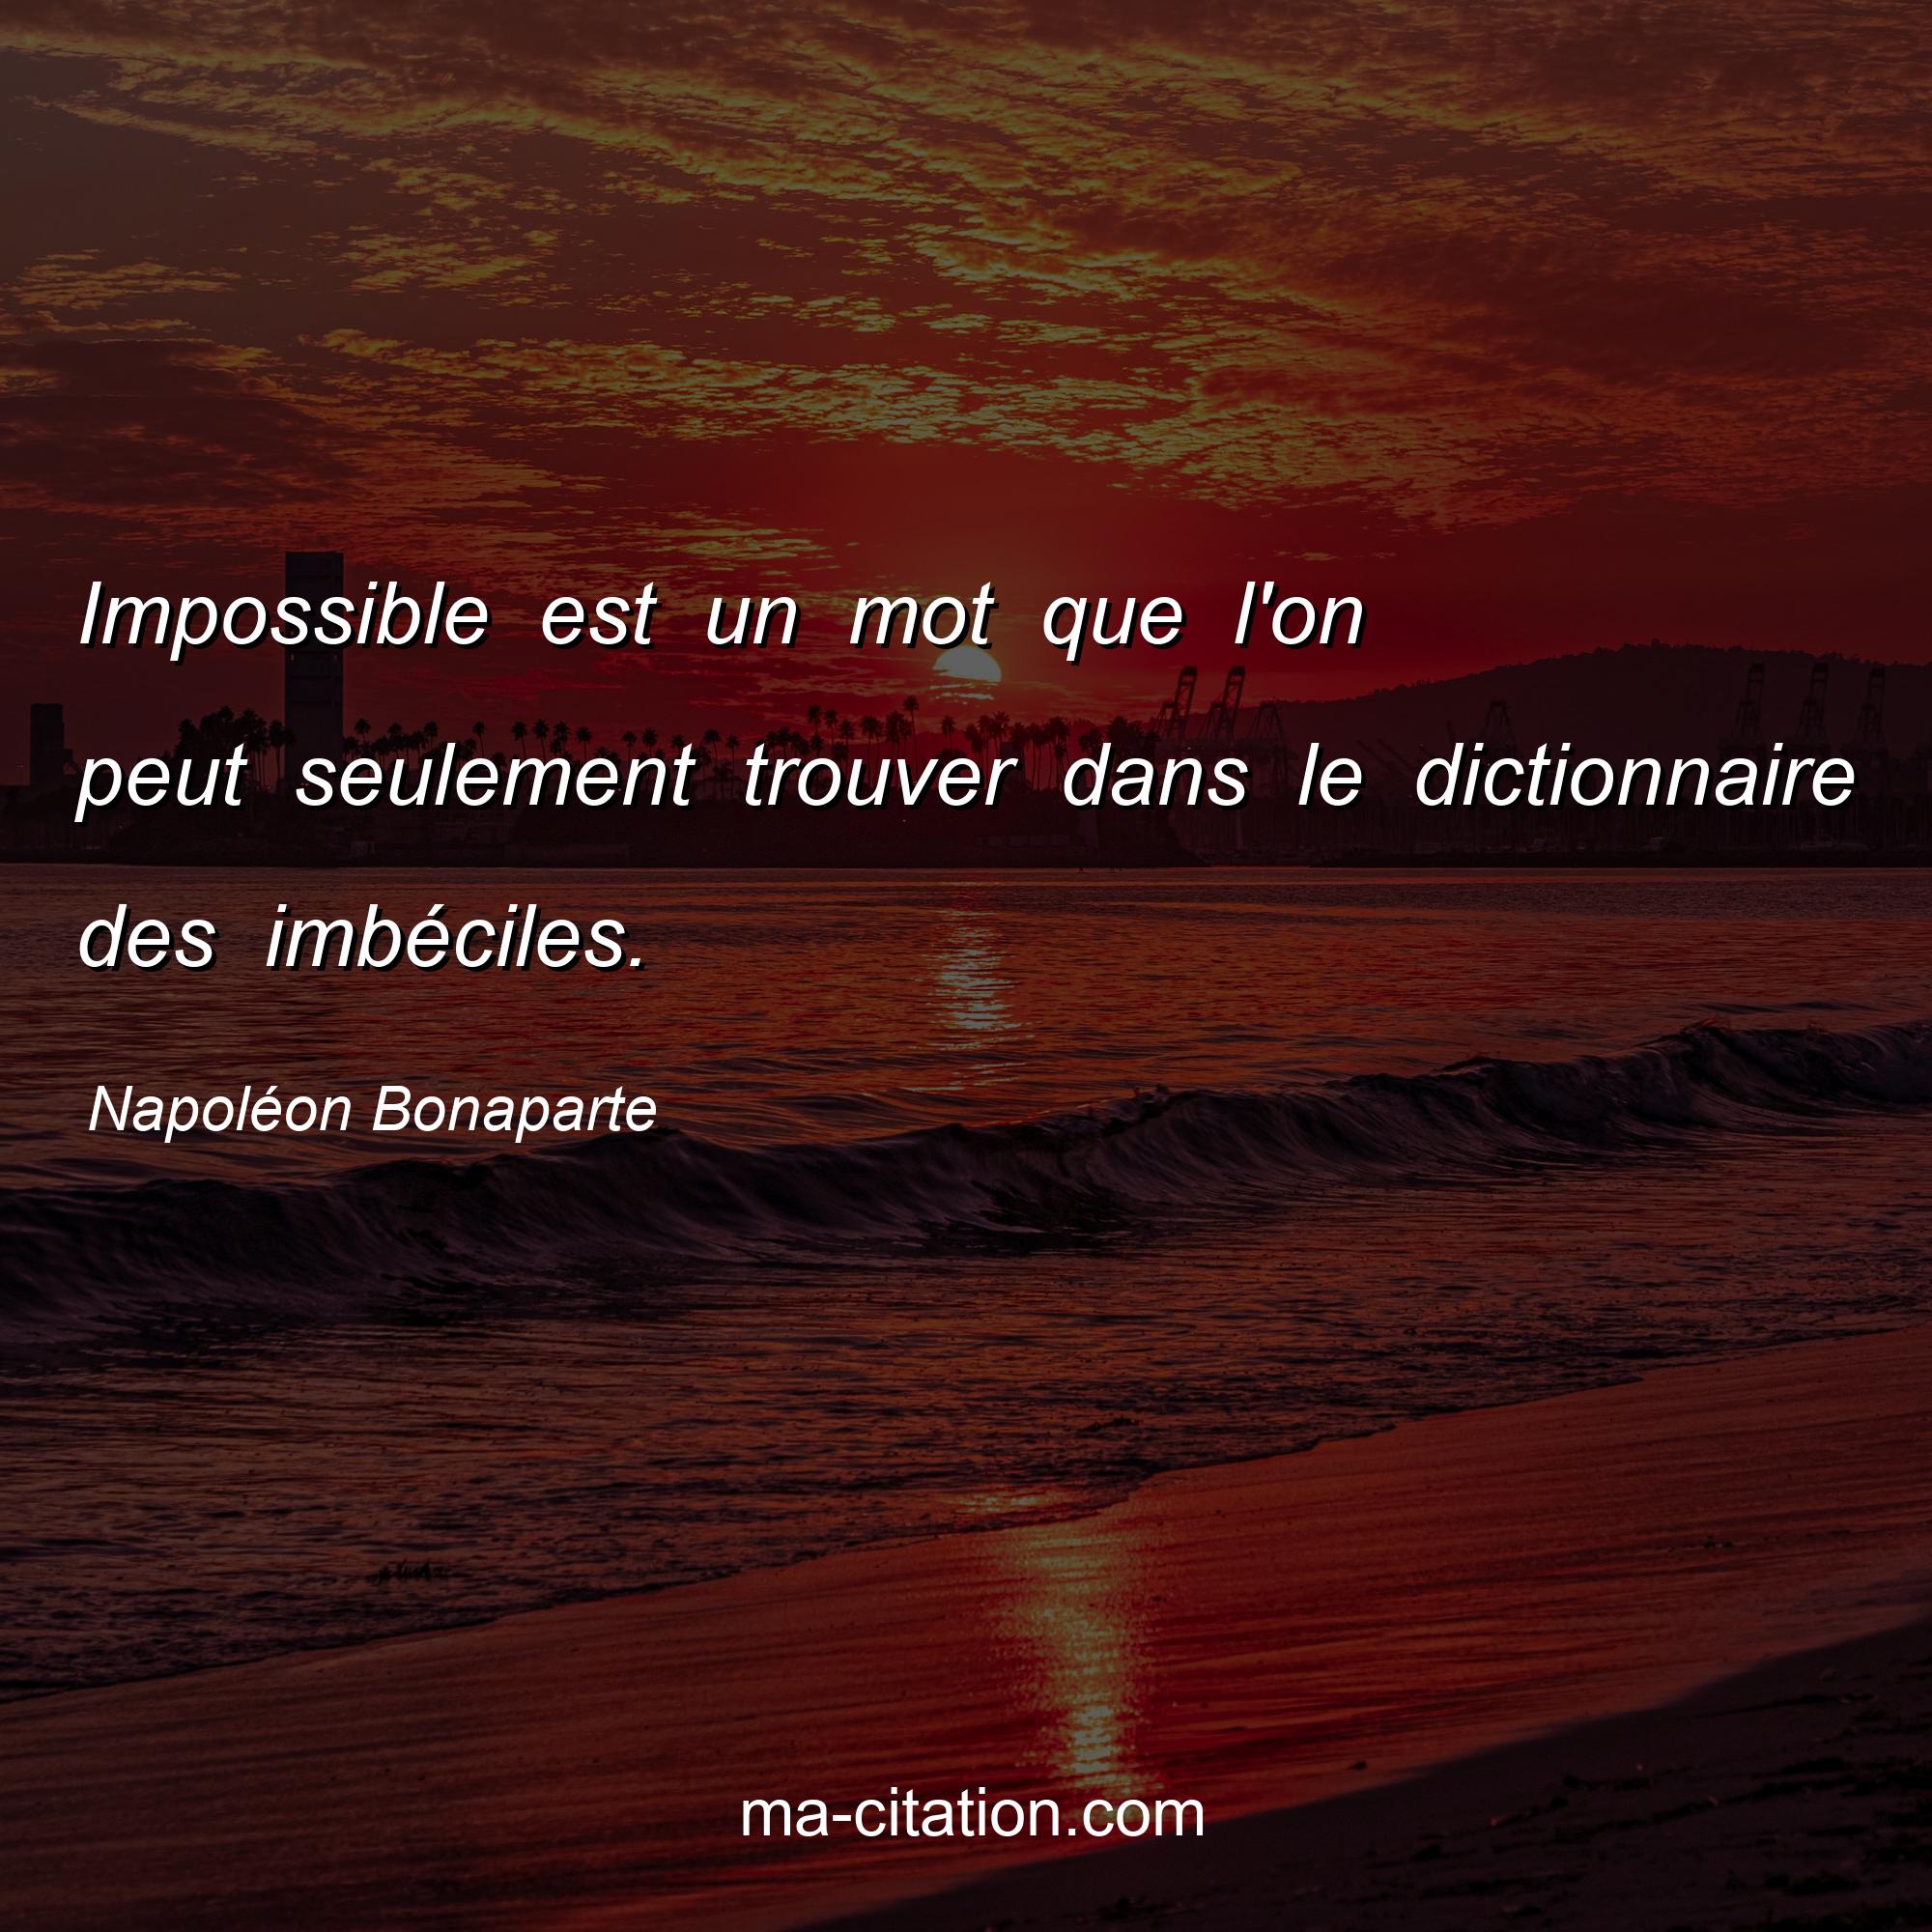 Napoléon Bonaparte : Impossible est un mot que l'on peut seulement trouver dans le dictionnaire des imbéciles.